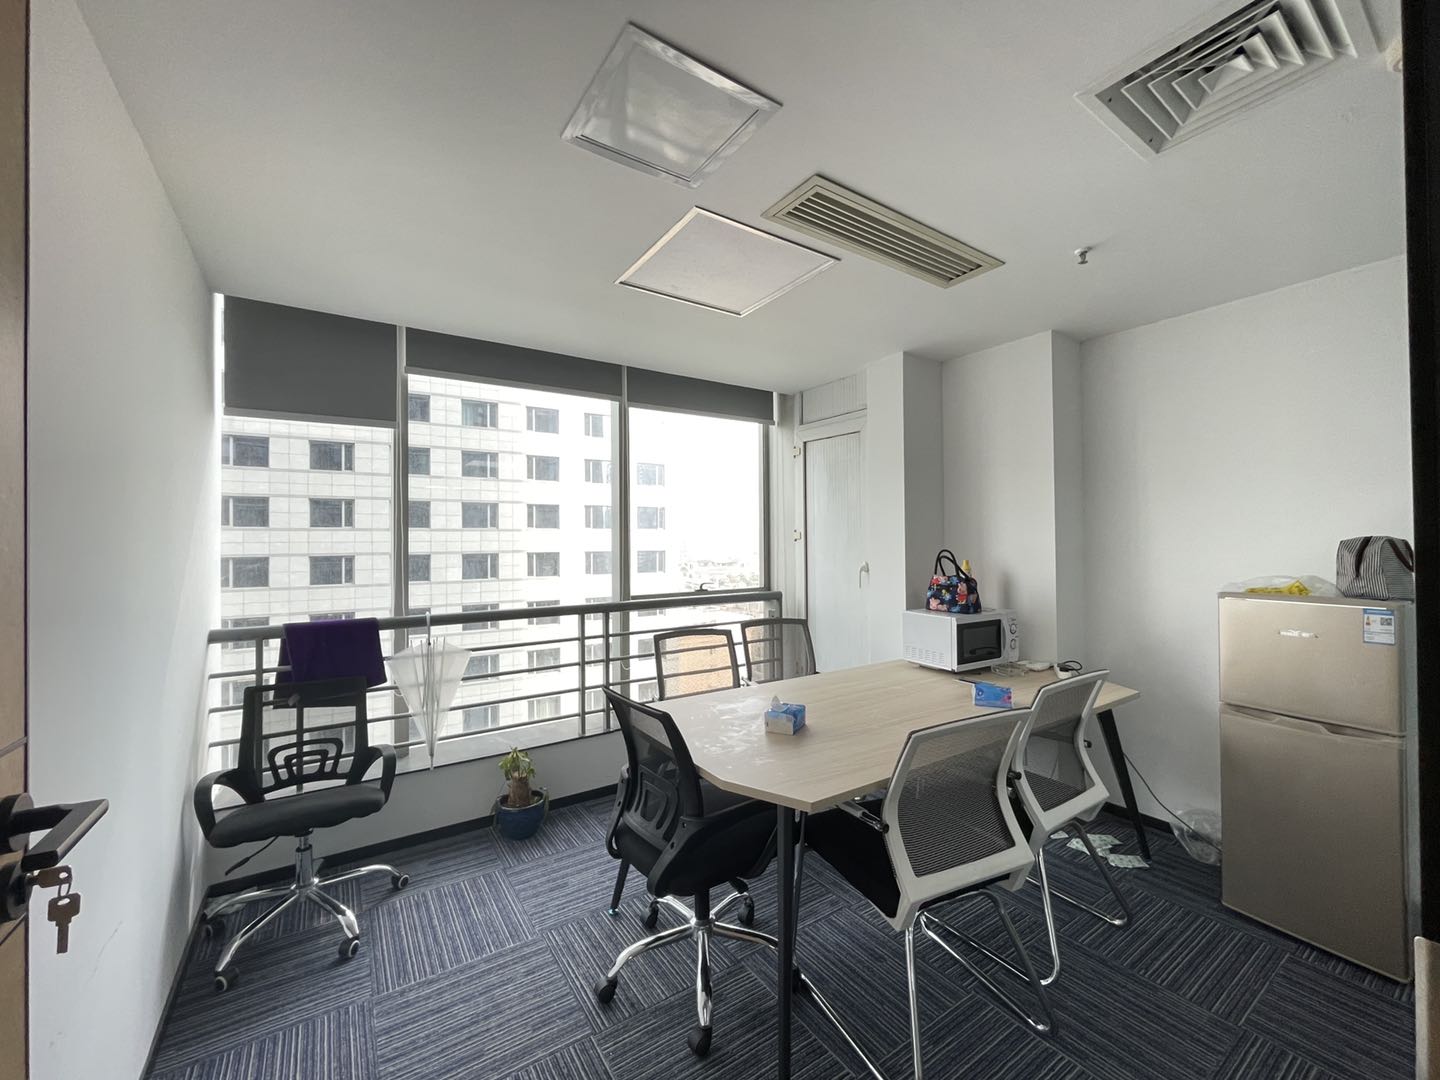 锦江区东门大桥地铁口东方广场精装101平办公室 户型方正 采光优秀 生活便利